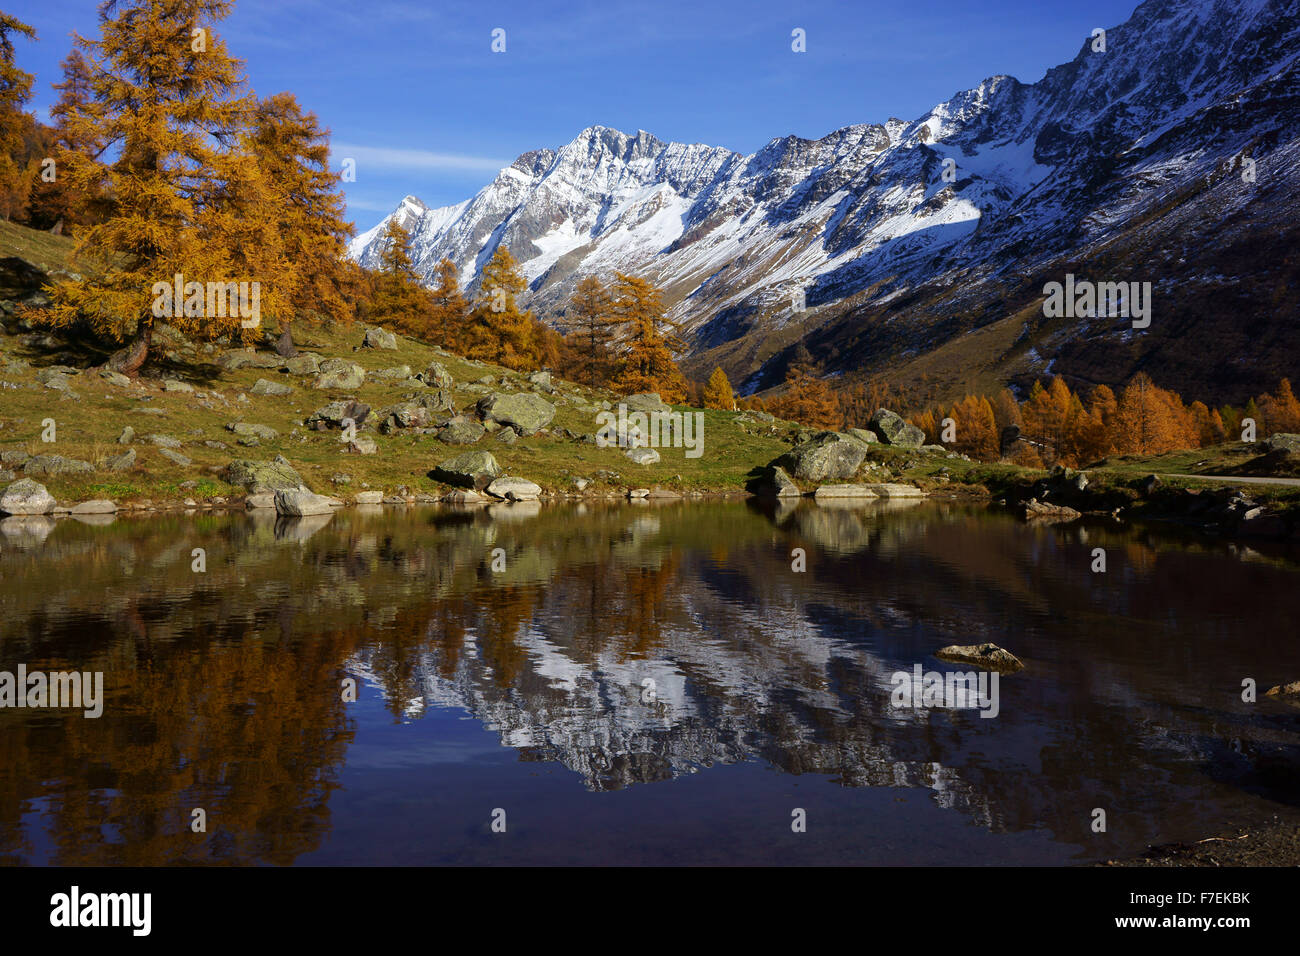 Fafleralp im Lötschental mit Bergen im Teich, Herbst, Walliser Alpen, Schweiz Stockfoto